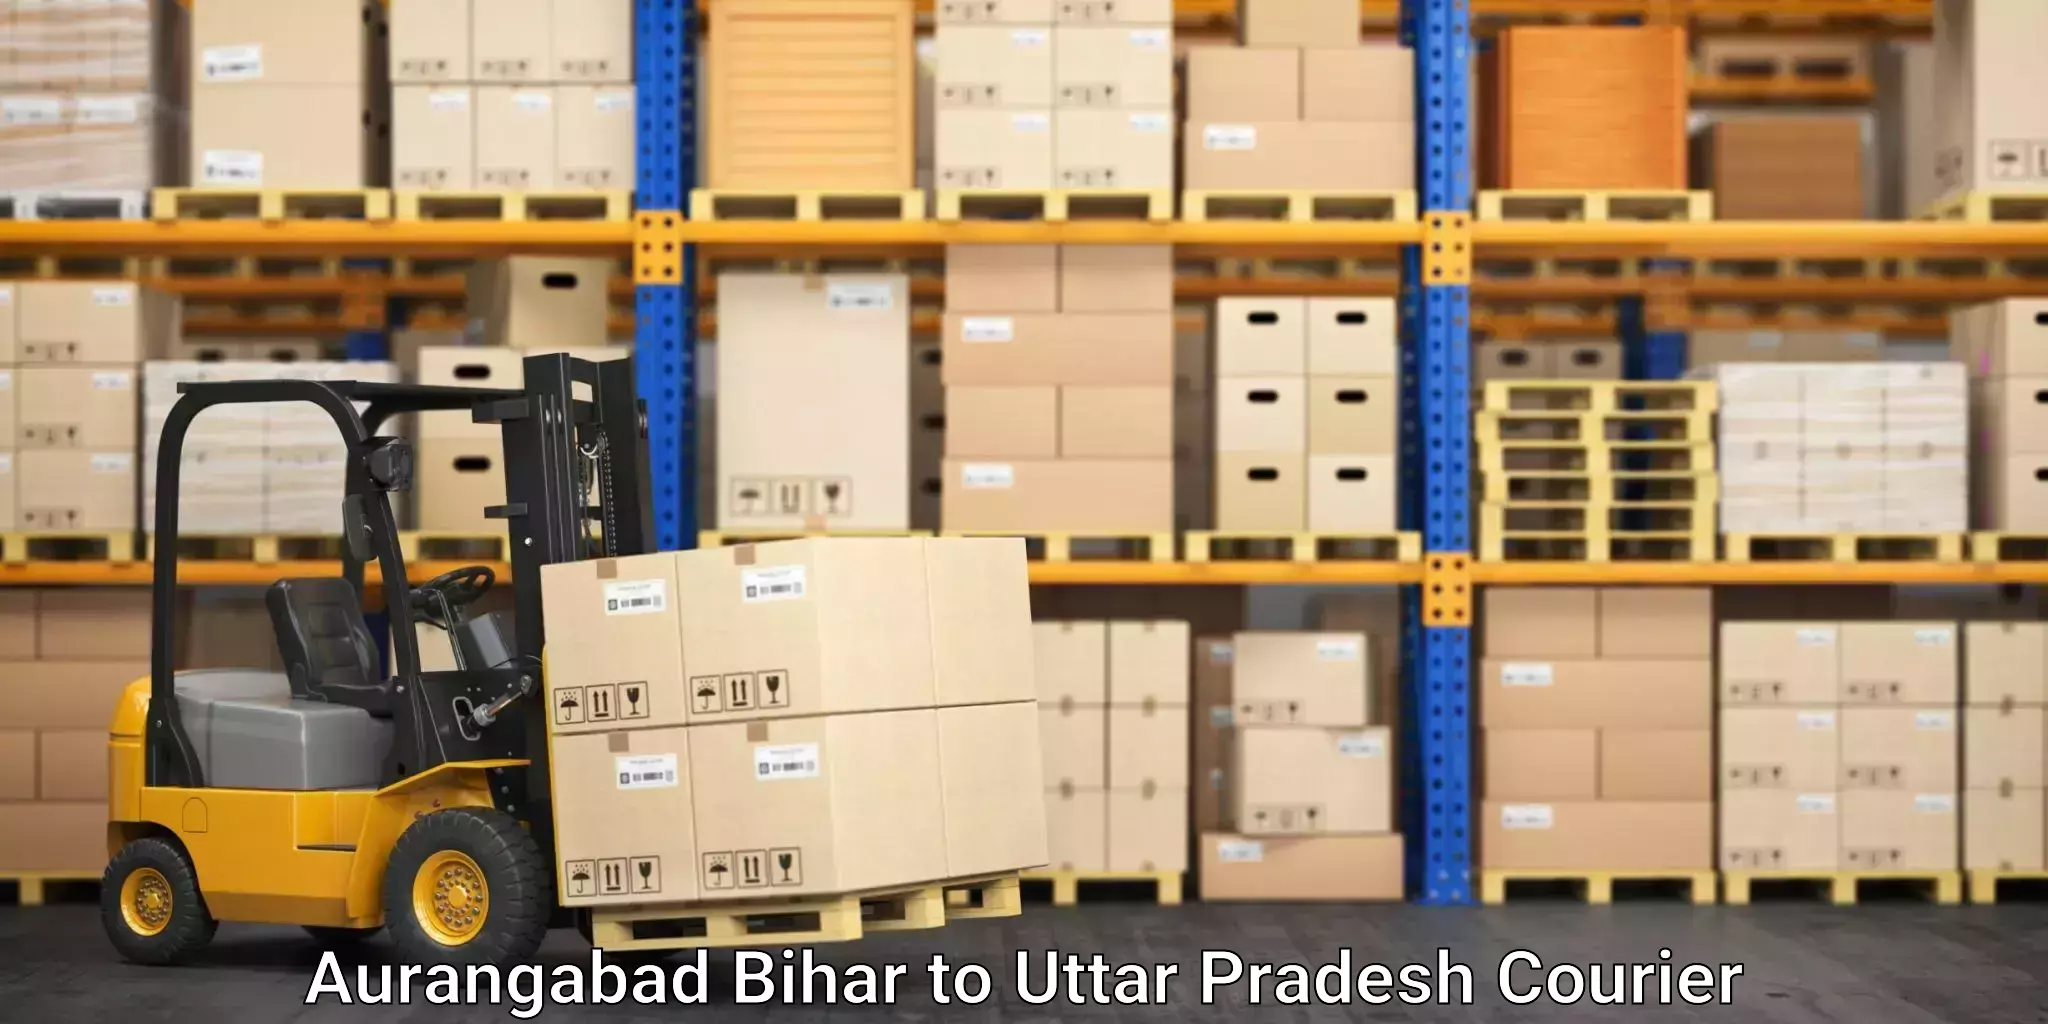 Professional movers Aurangabad Bihar to Behat